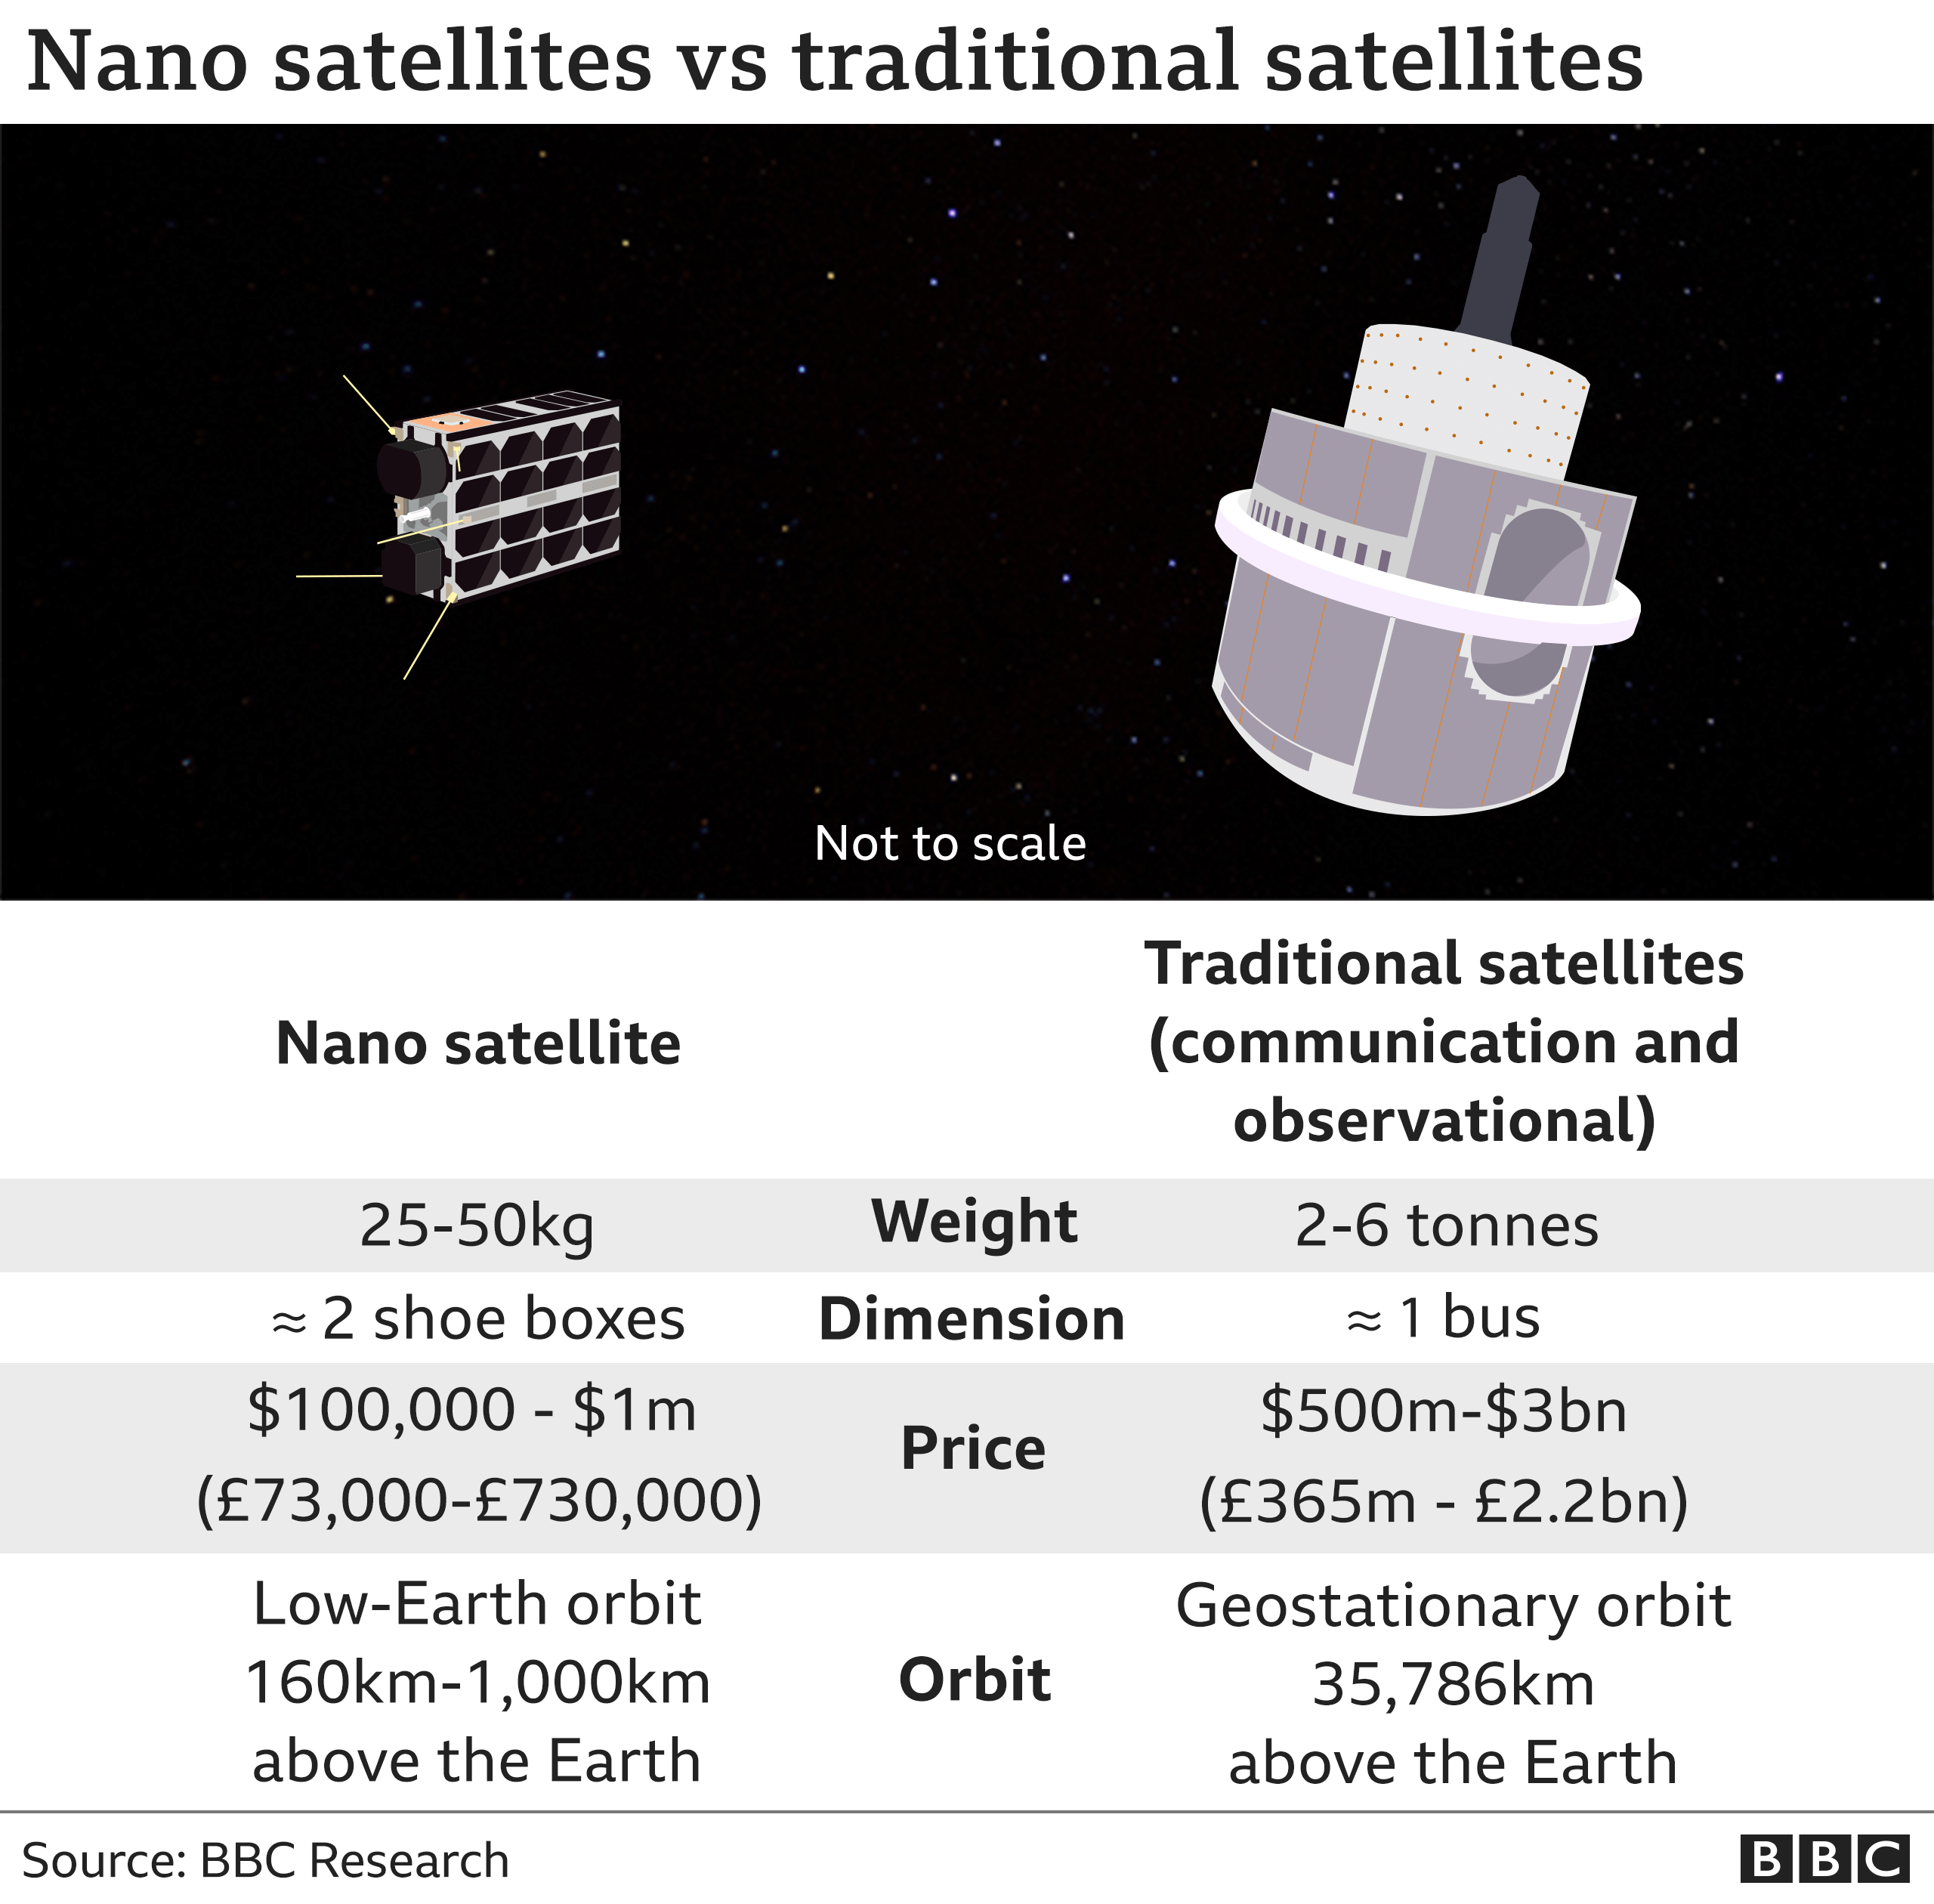 Satellites comparisons